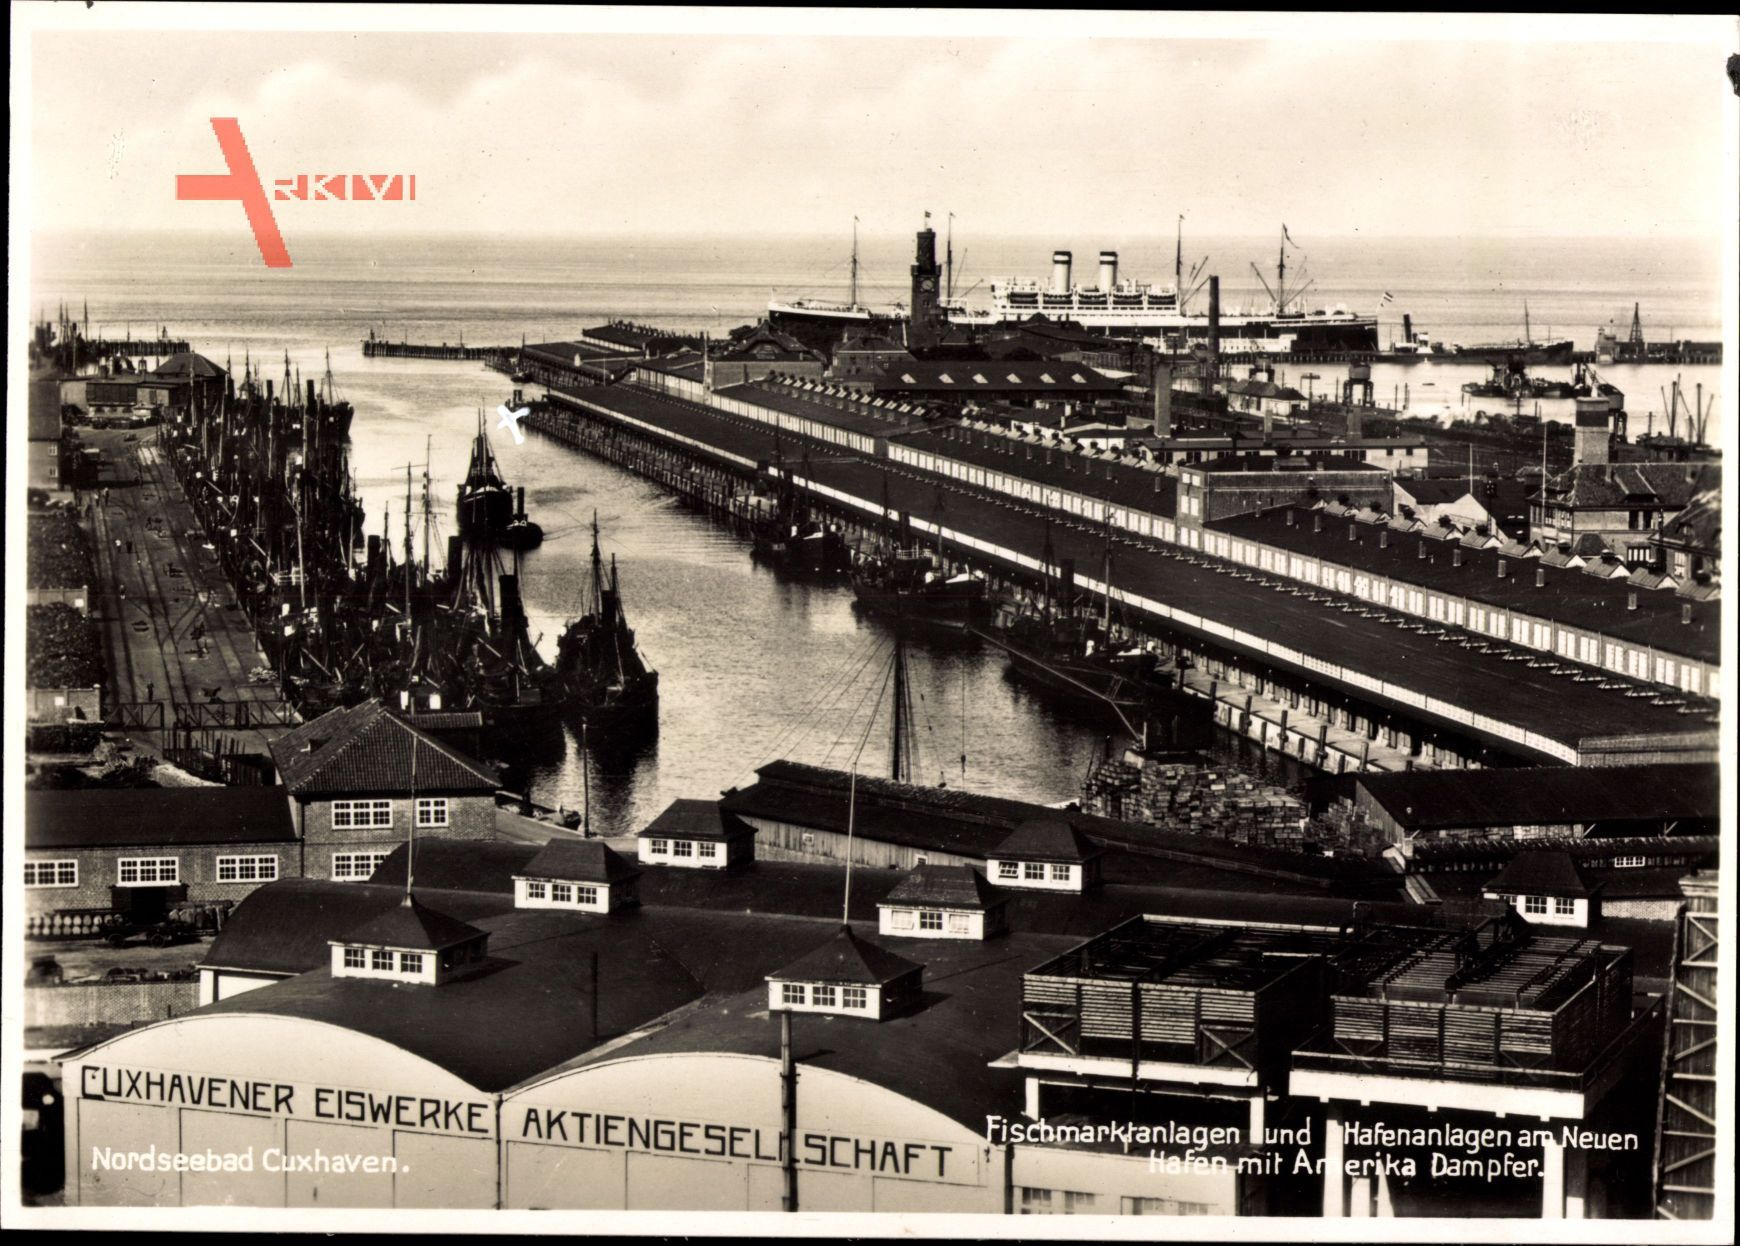 Cuxhaven, Fischmarkt, Hafenanlagen, Amerika Dampfer, Eisenwerke AG